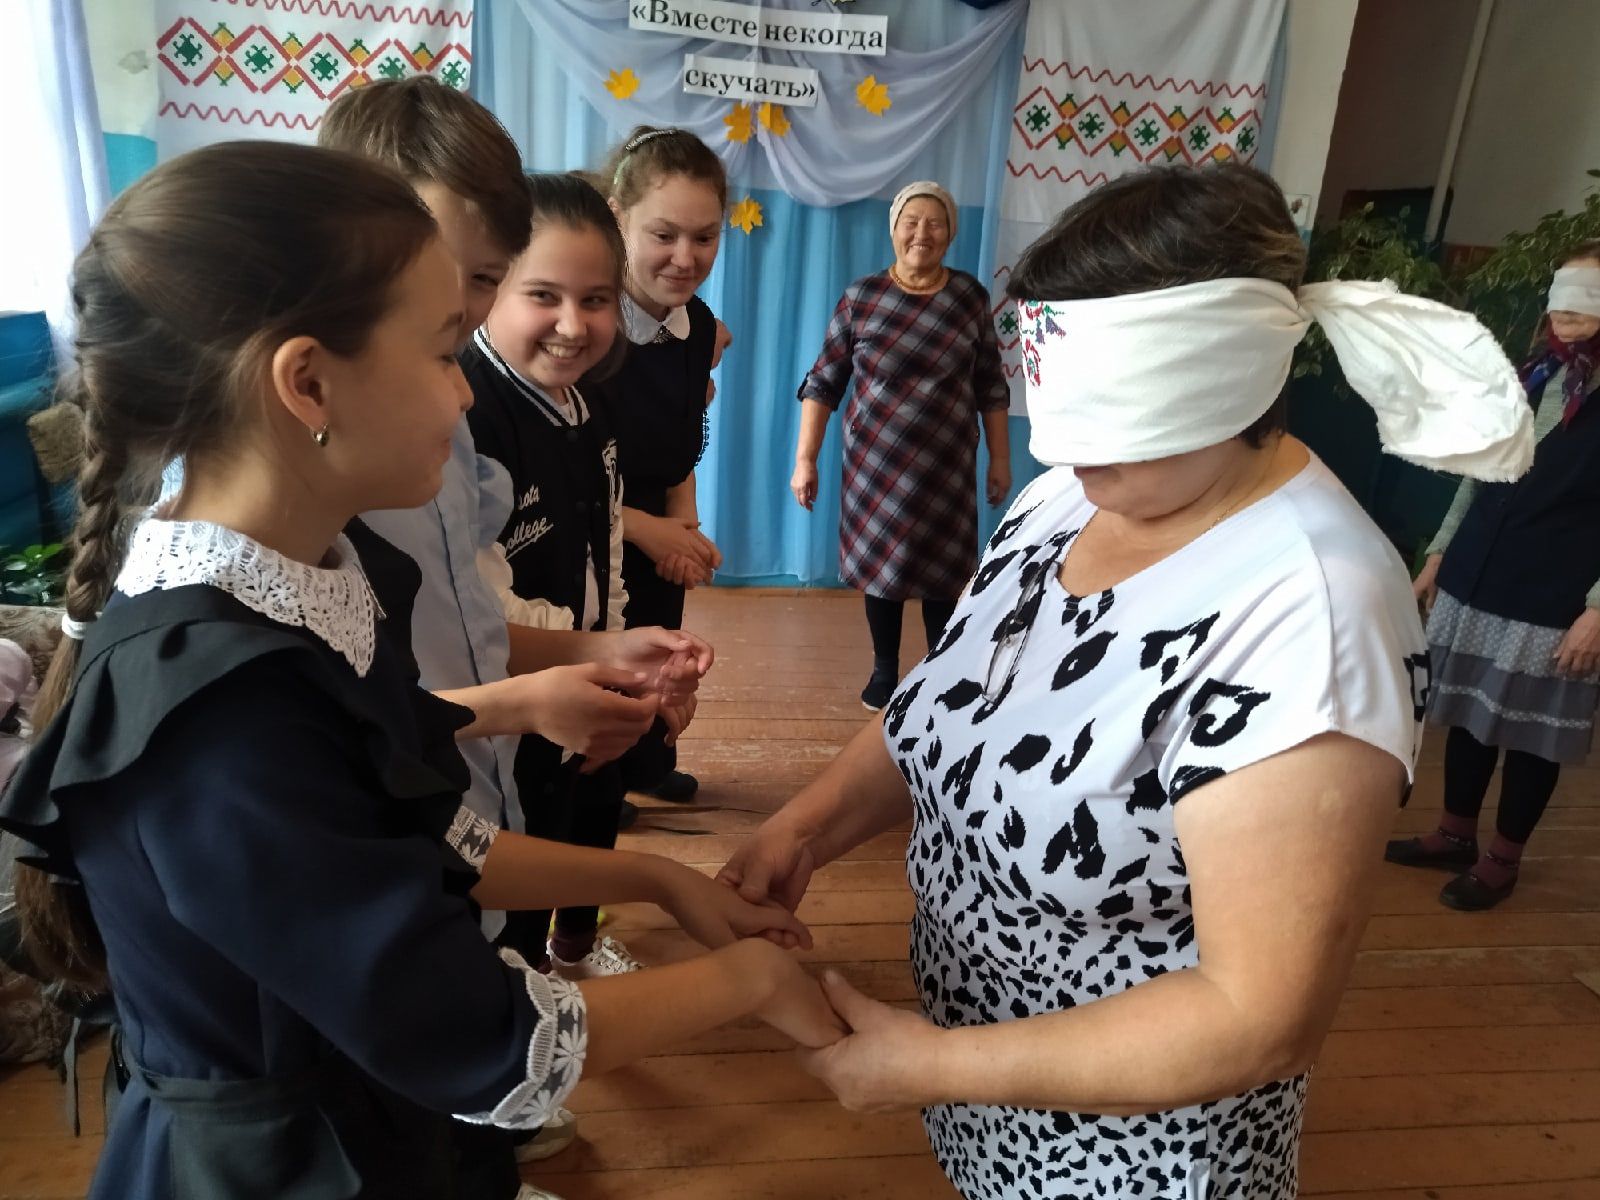 Вместе некогда скучать: в чистопольском селе устроили праздник для бабушек и их внуков